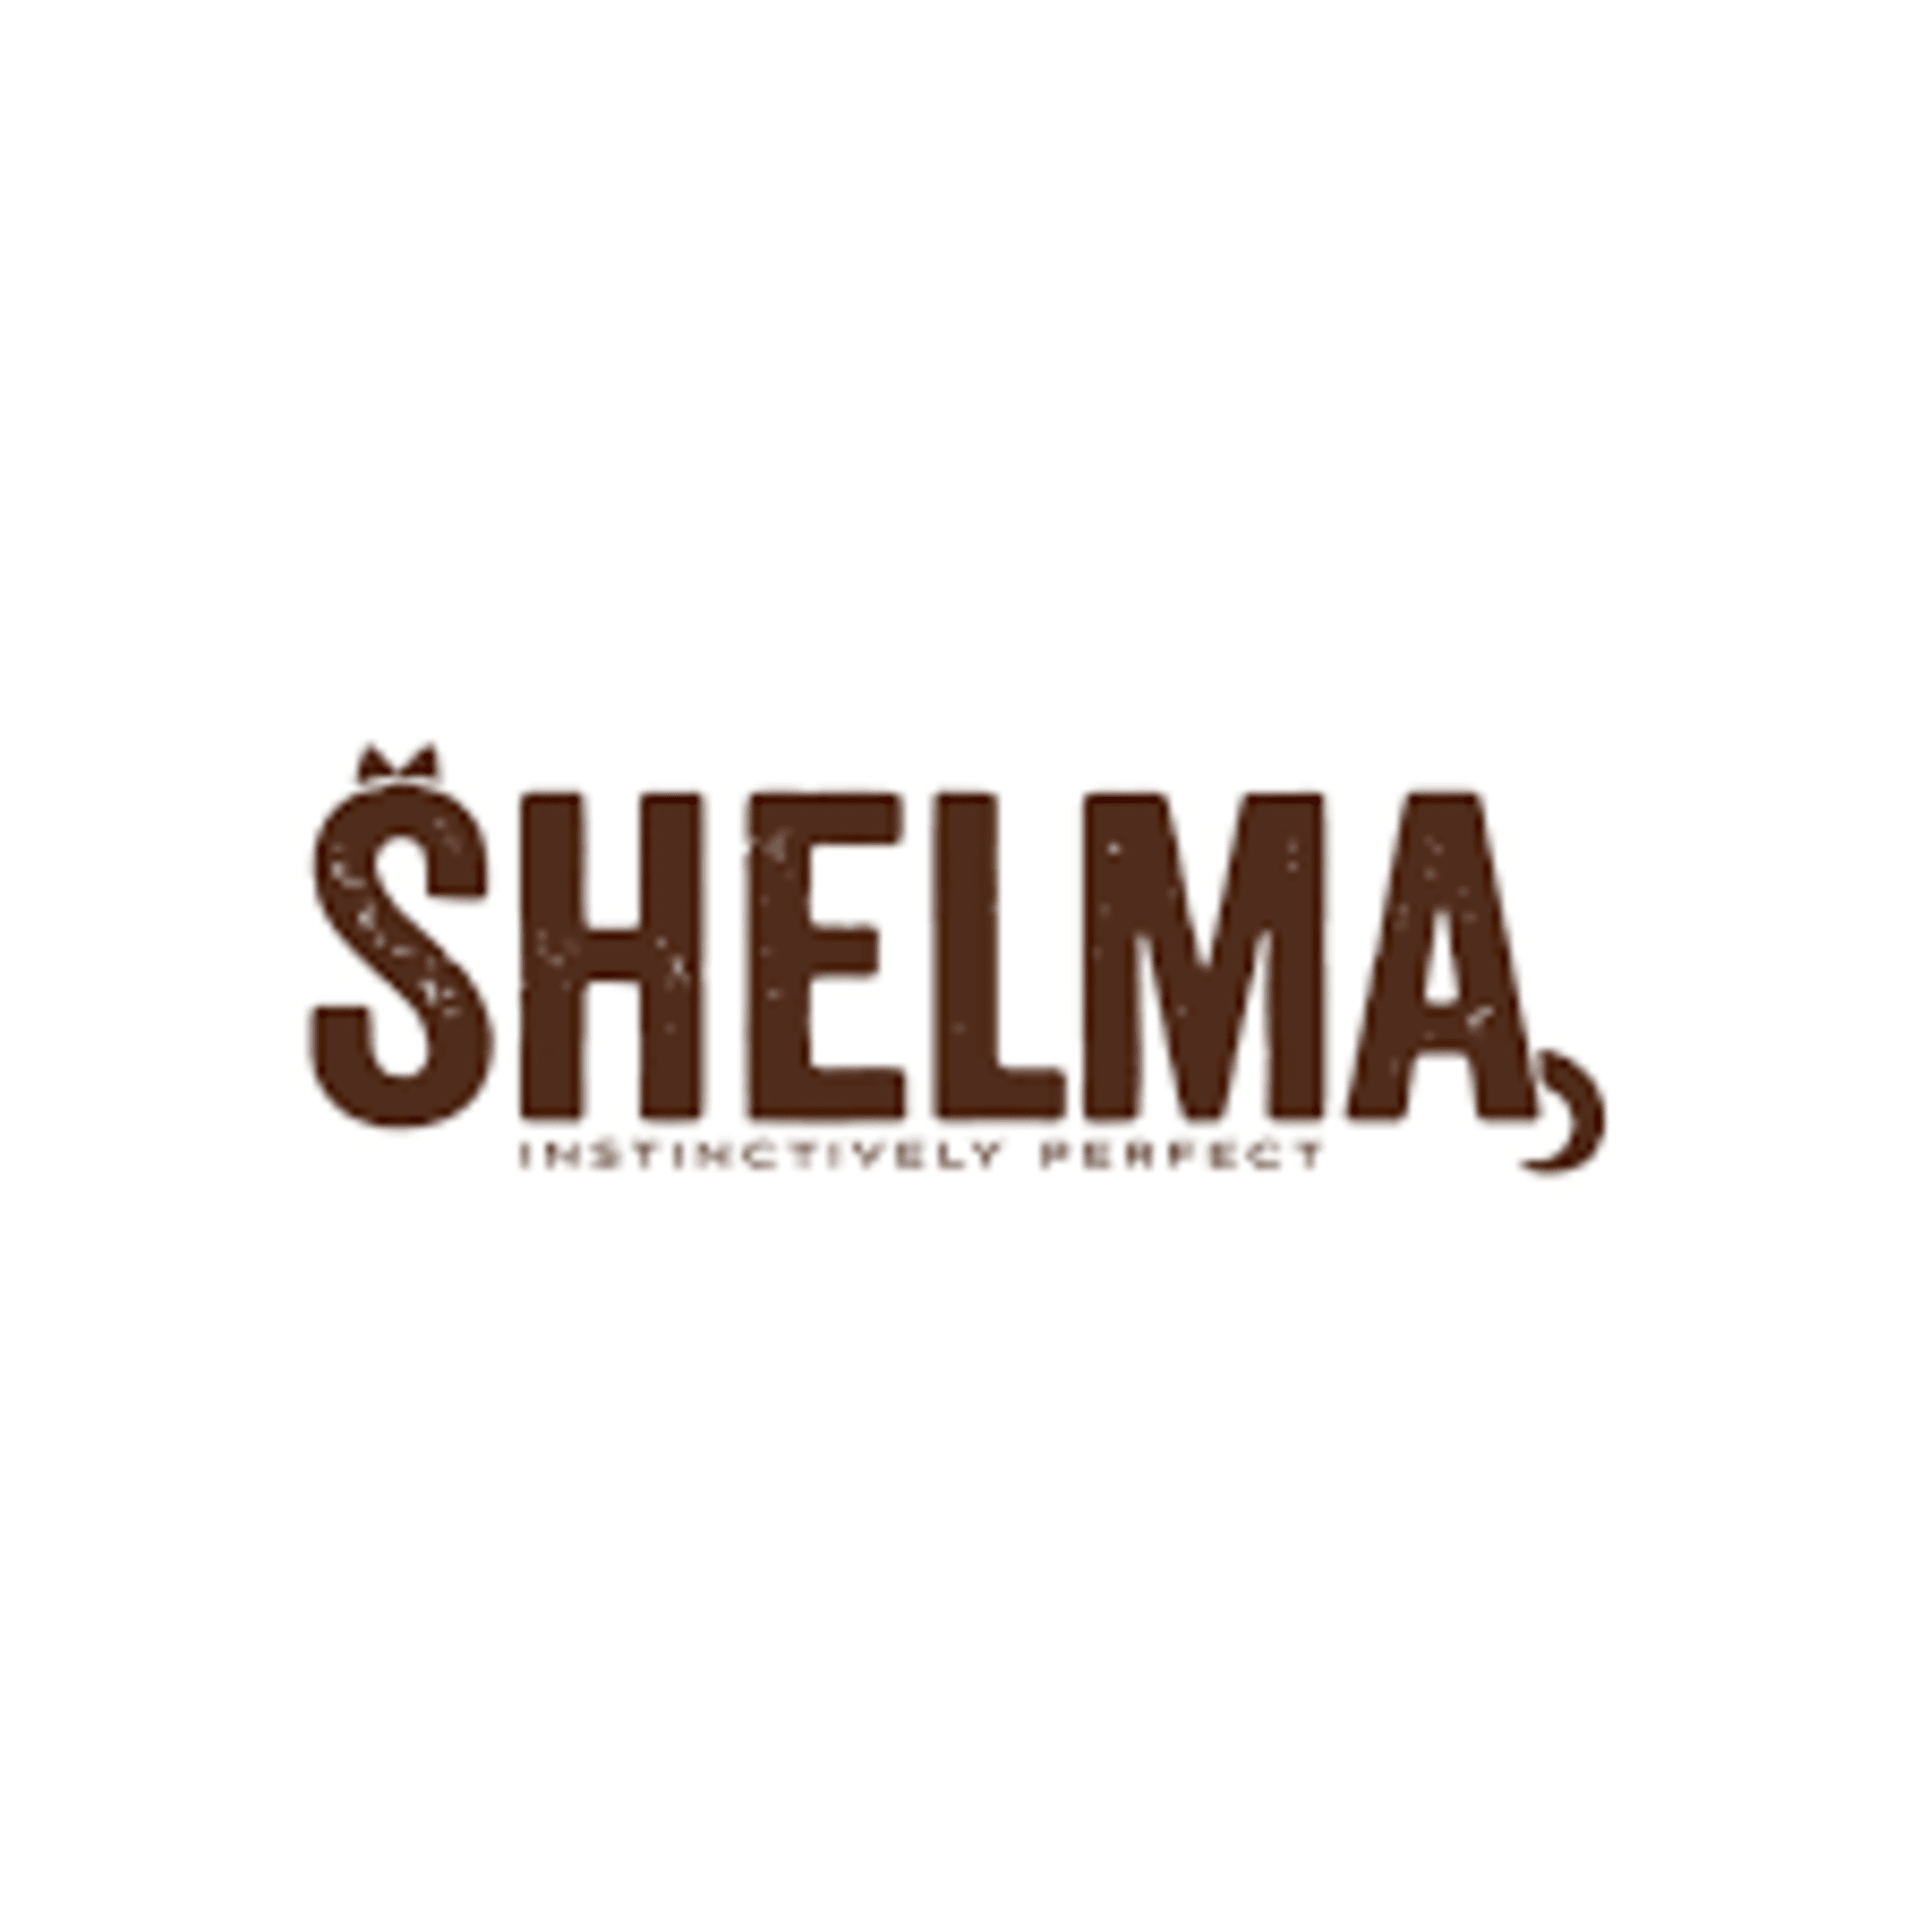 Soutěžte se Showtimem o balíček produktů značky Shelma pro vaše kočky 